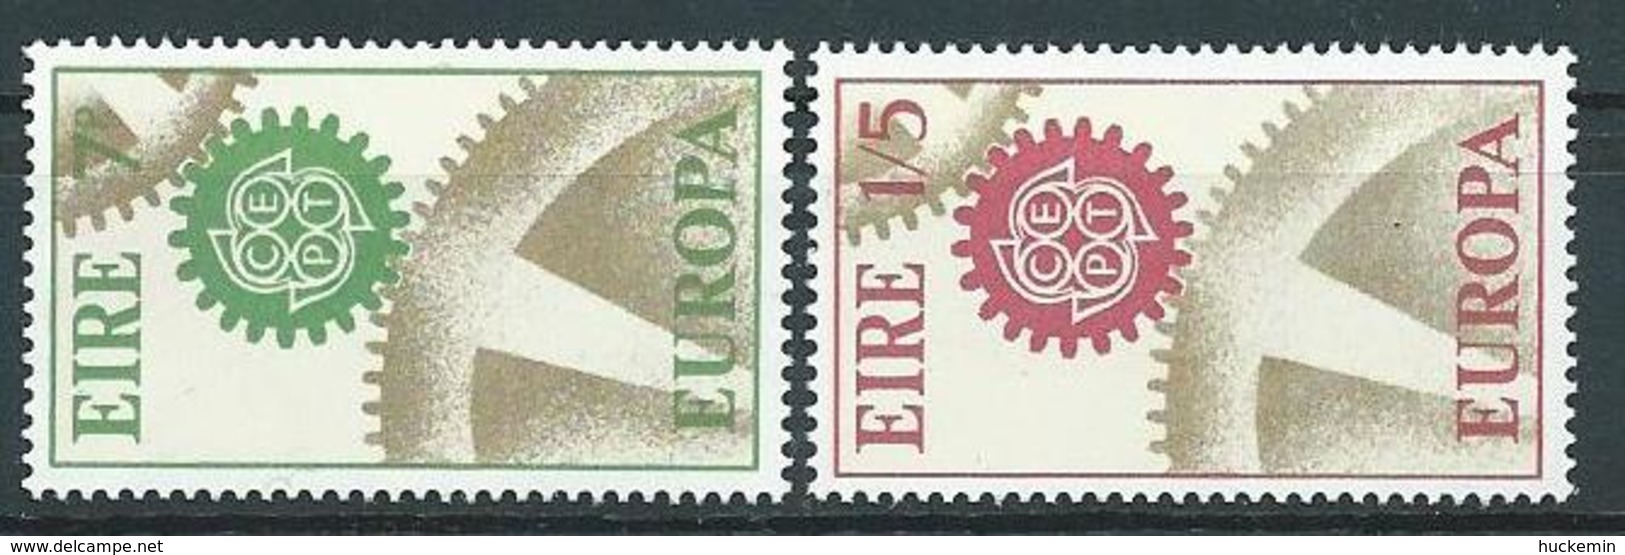 Irland 1967 Mi 192 - 193  Europa Postfrisch - Ungebraucht